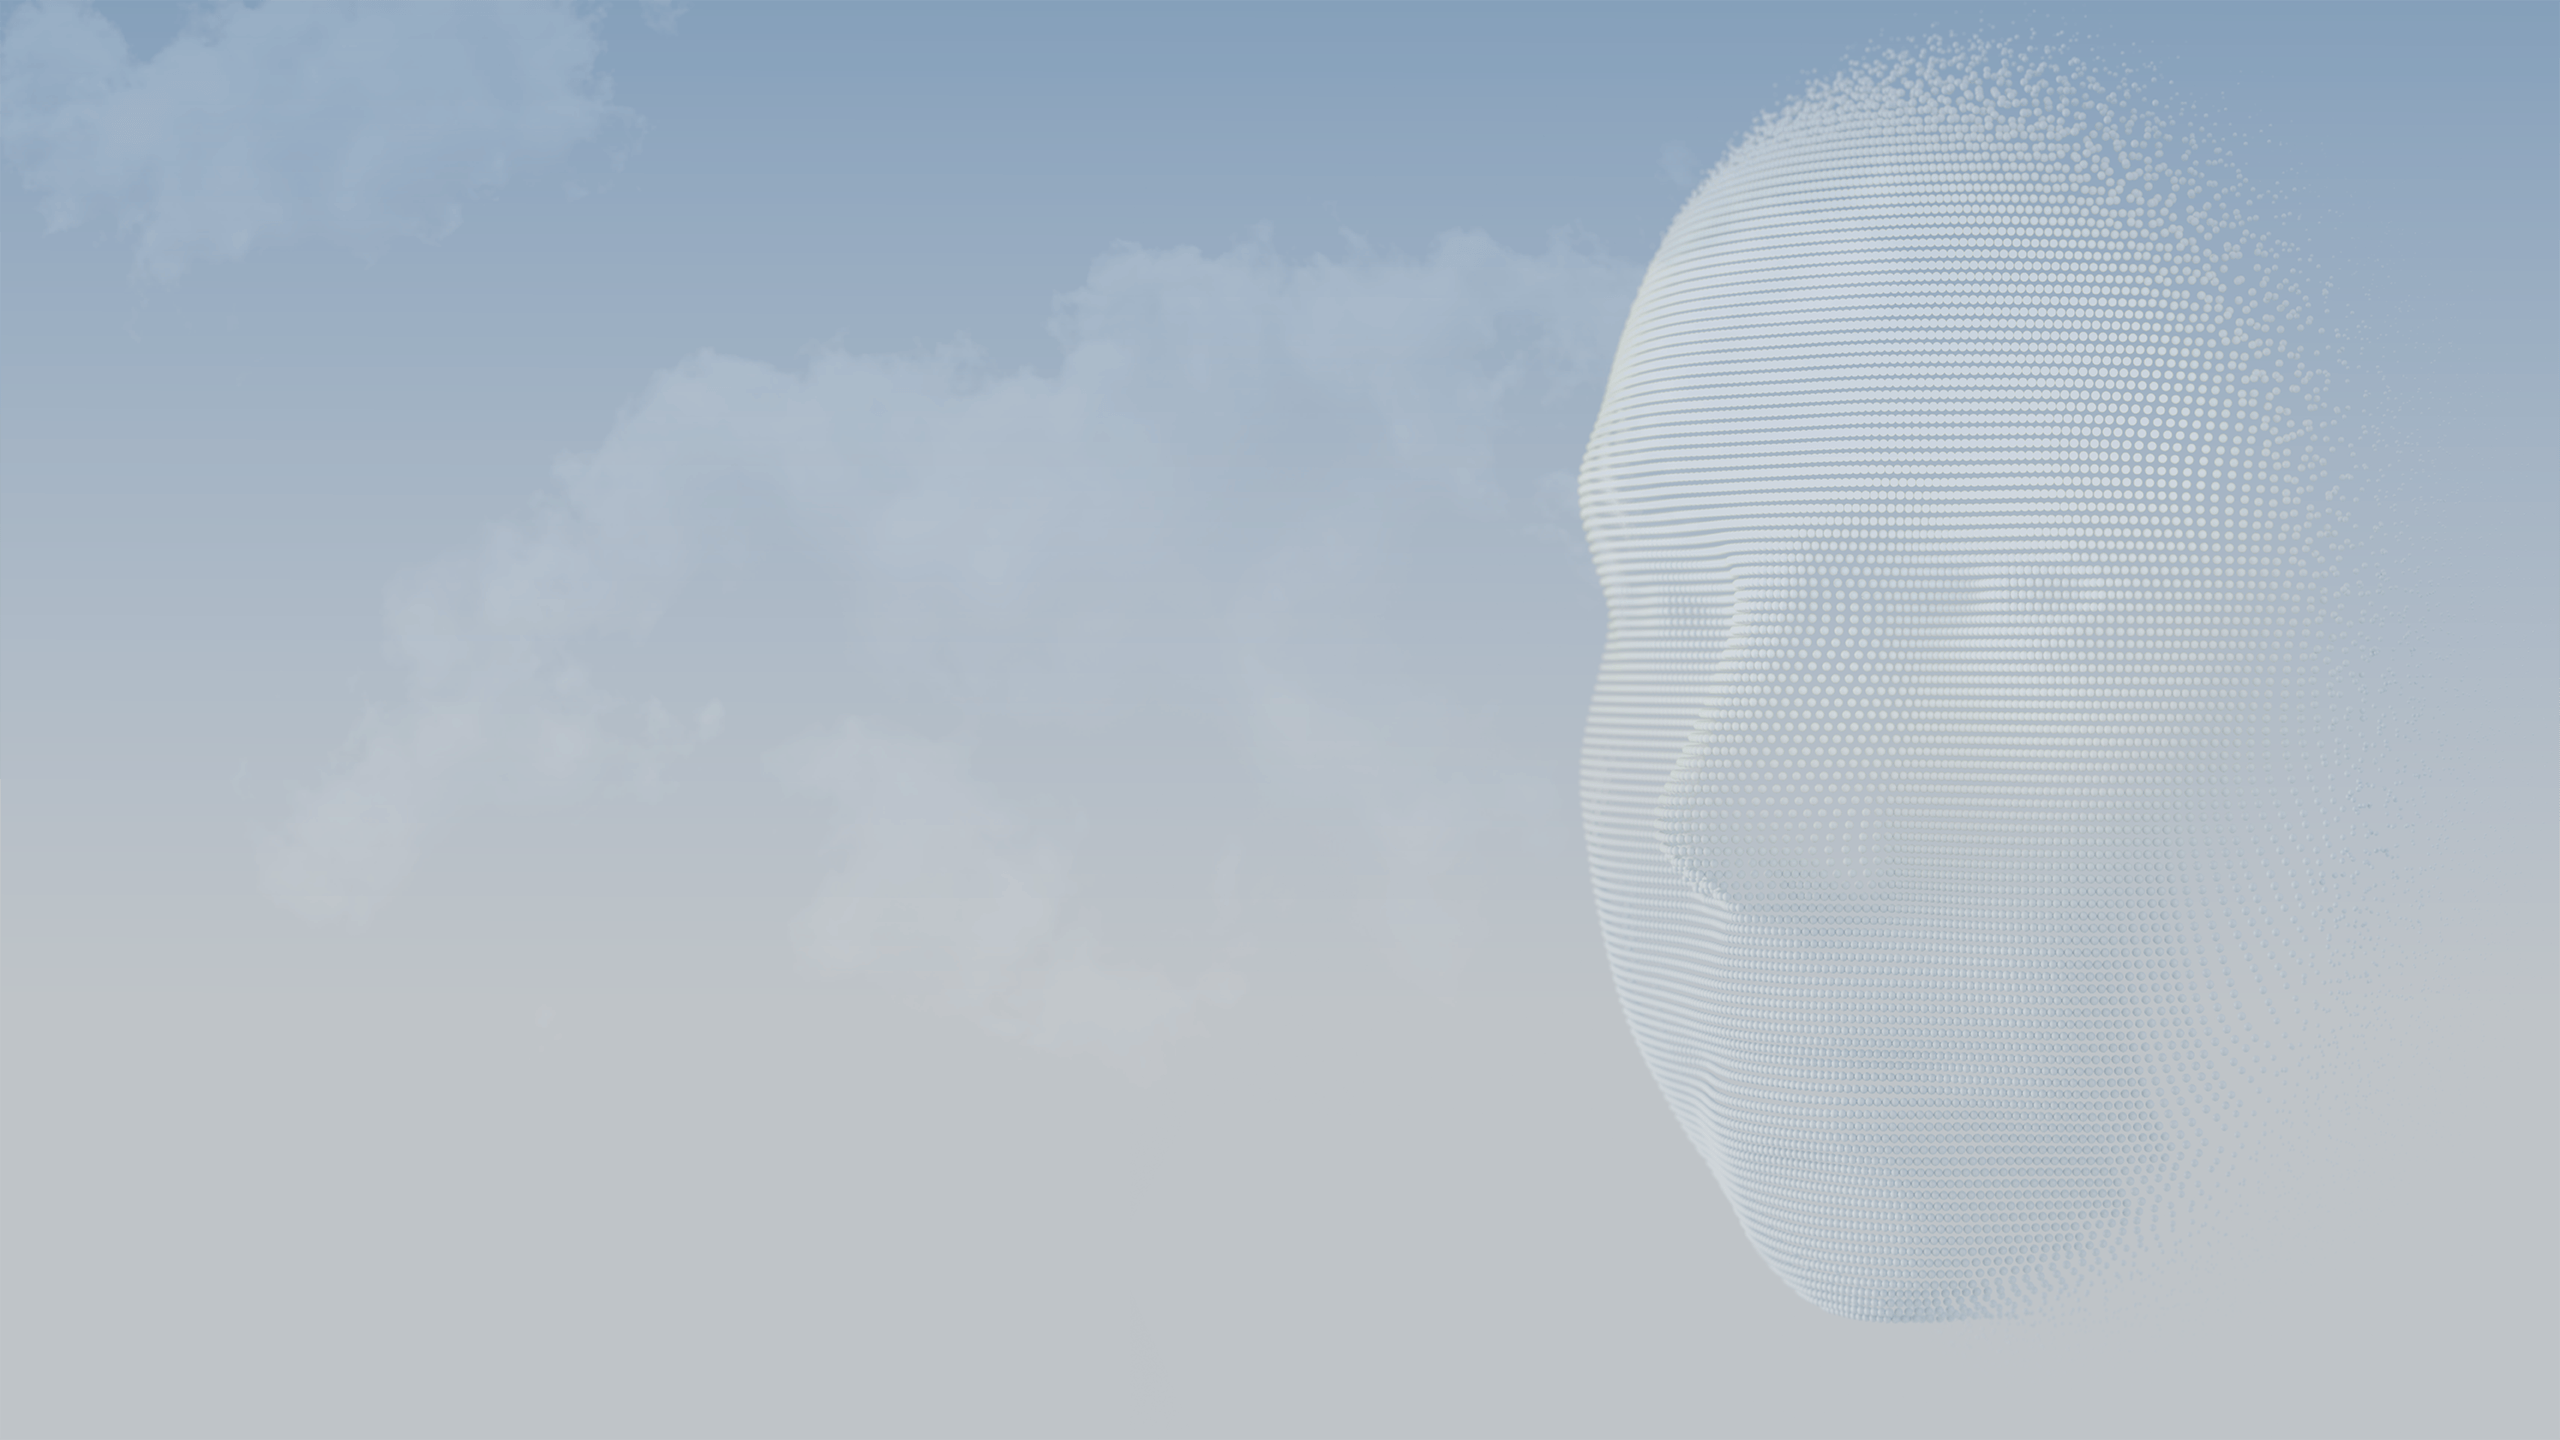 3D-bollen vormen het gezicht van een persoon tegen een blauwe lucht.